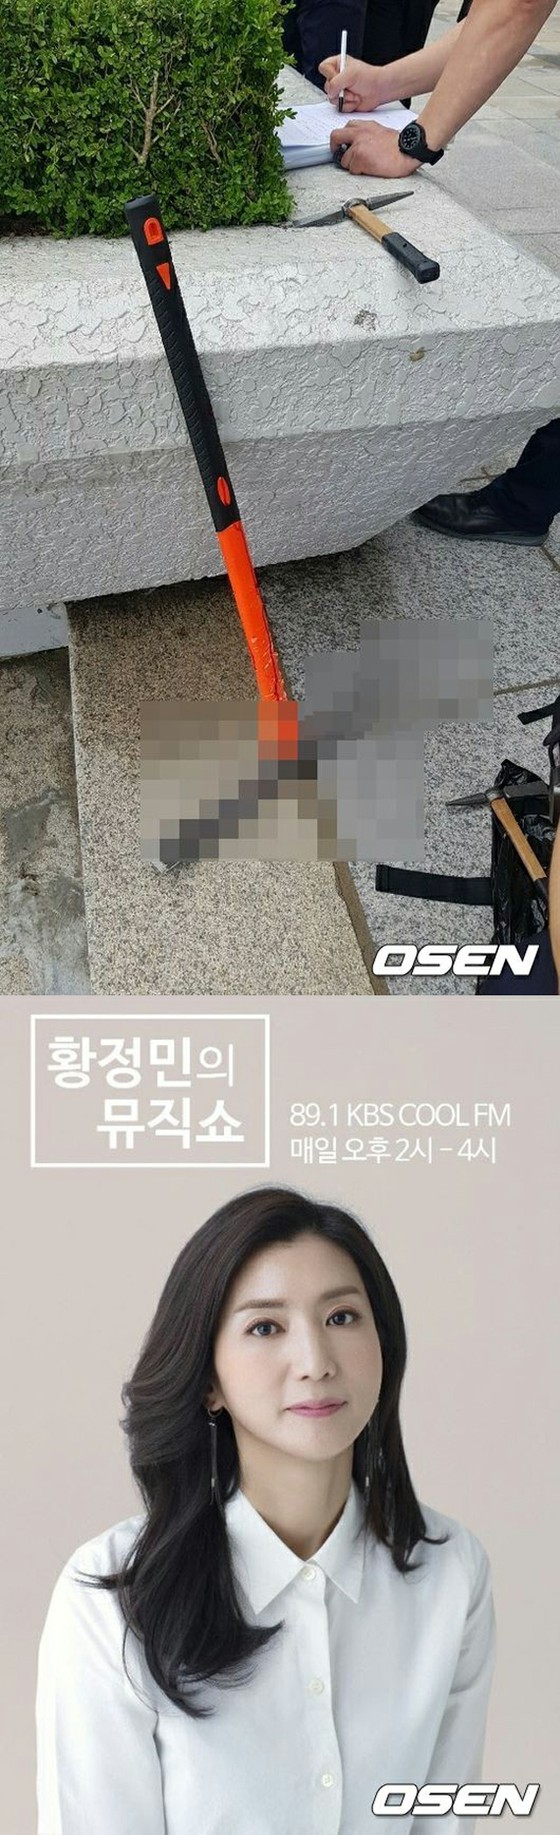 KBS 생방송중인 라디오 오픈 스튜디오에서 유리창이 부숴되는 사건 ... 인명 피해 없이도 충격적인 현장